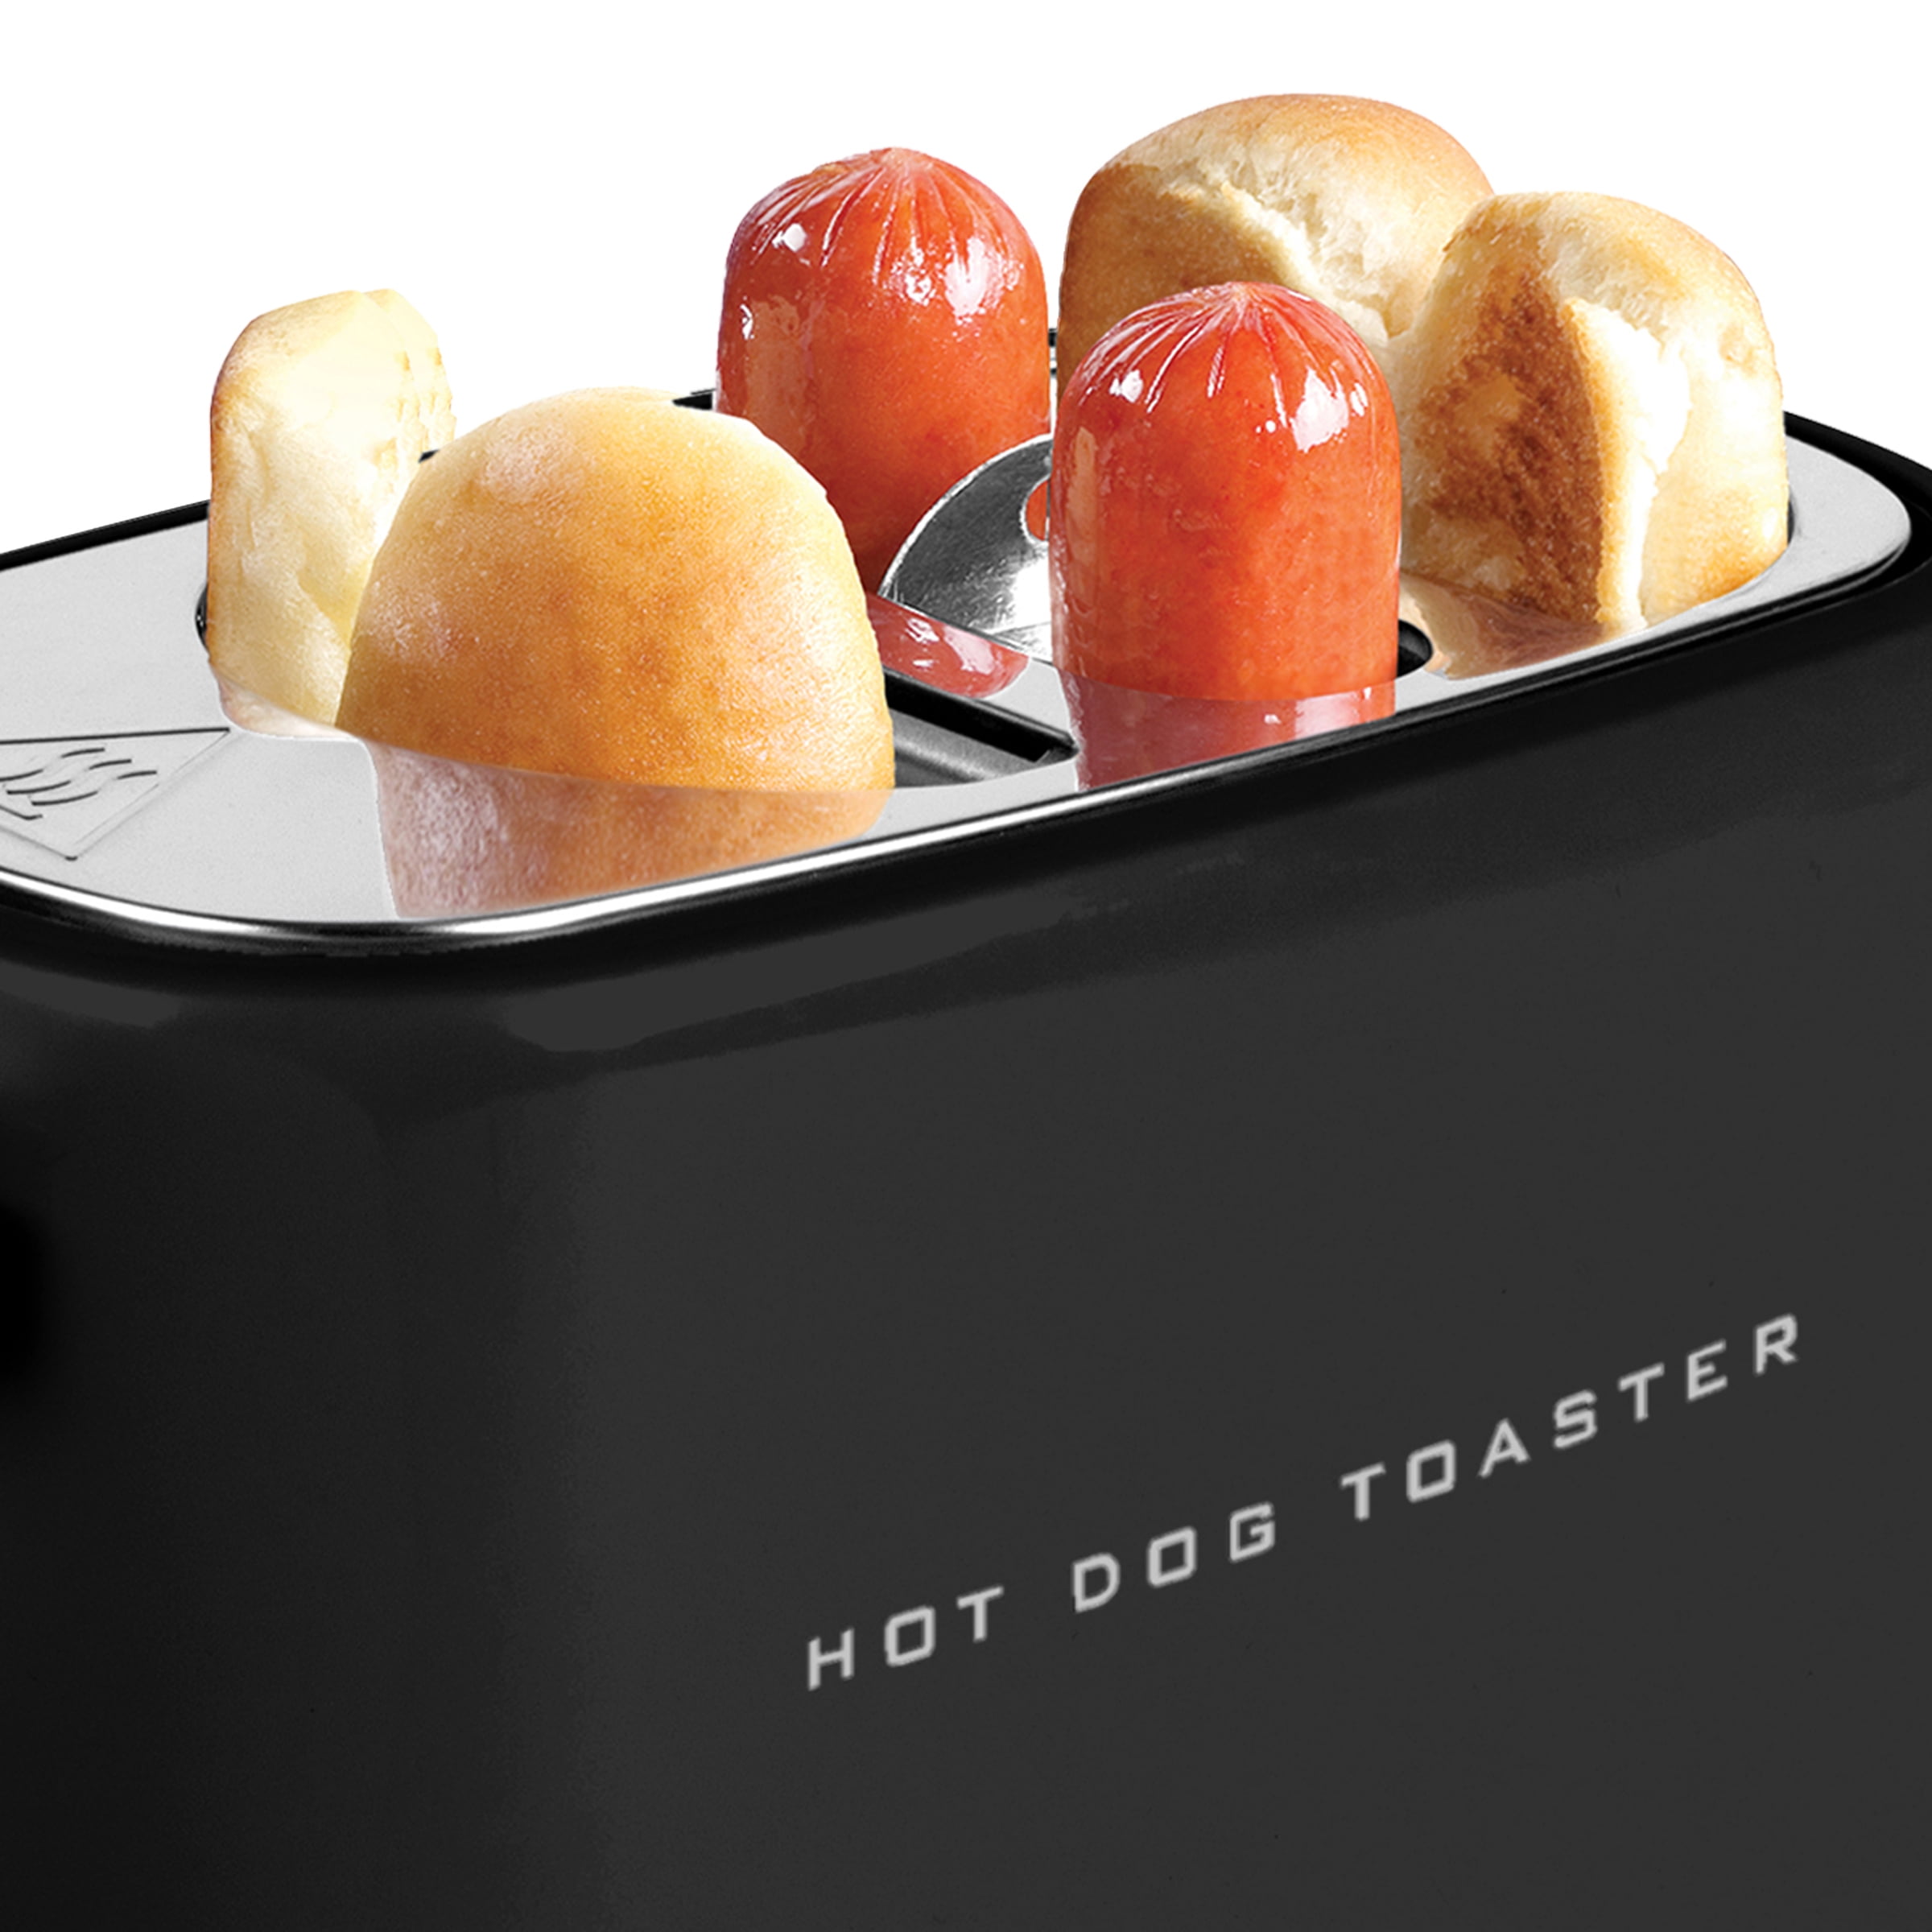 Hot Dog Toaster –